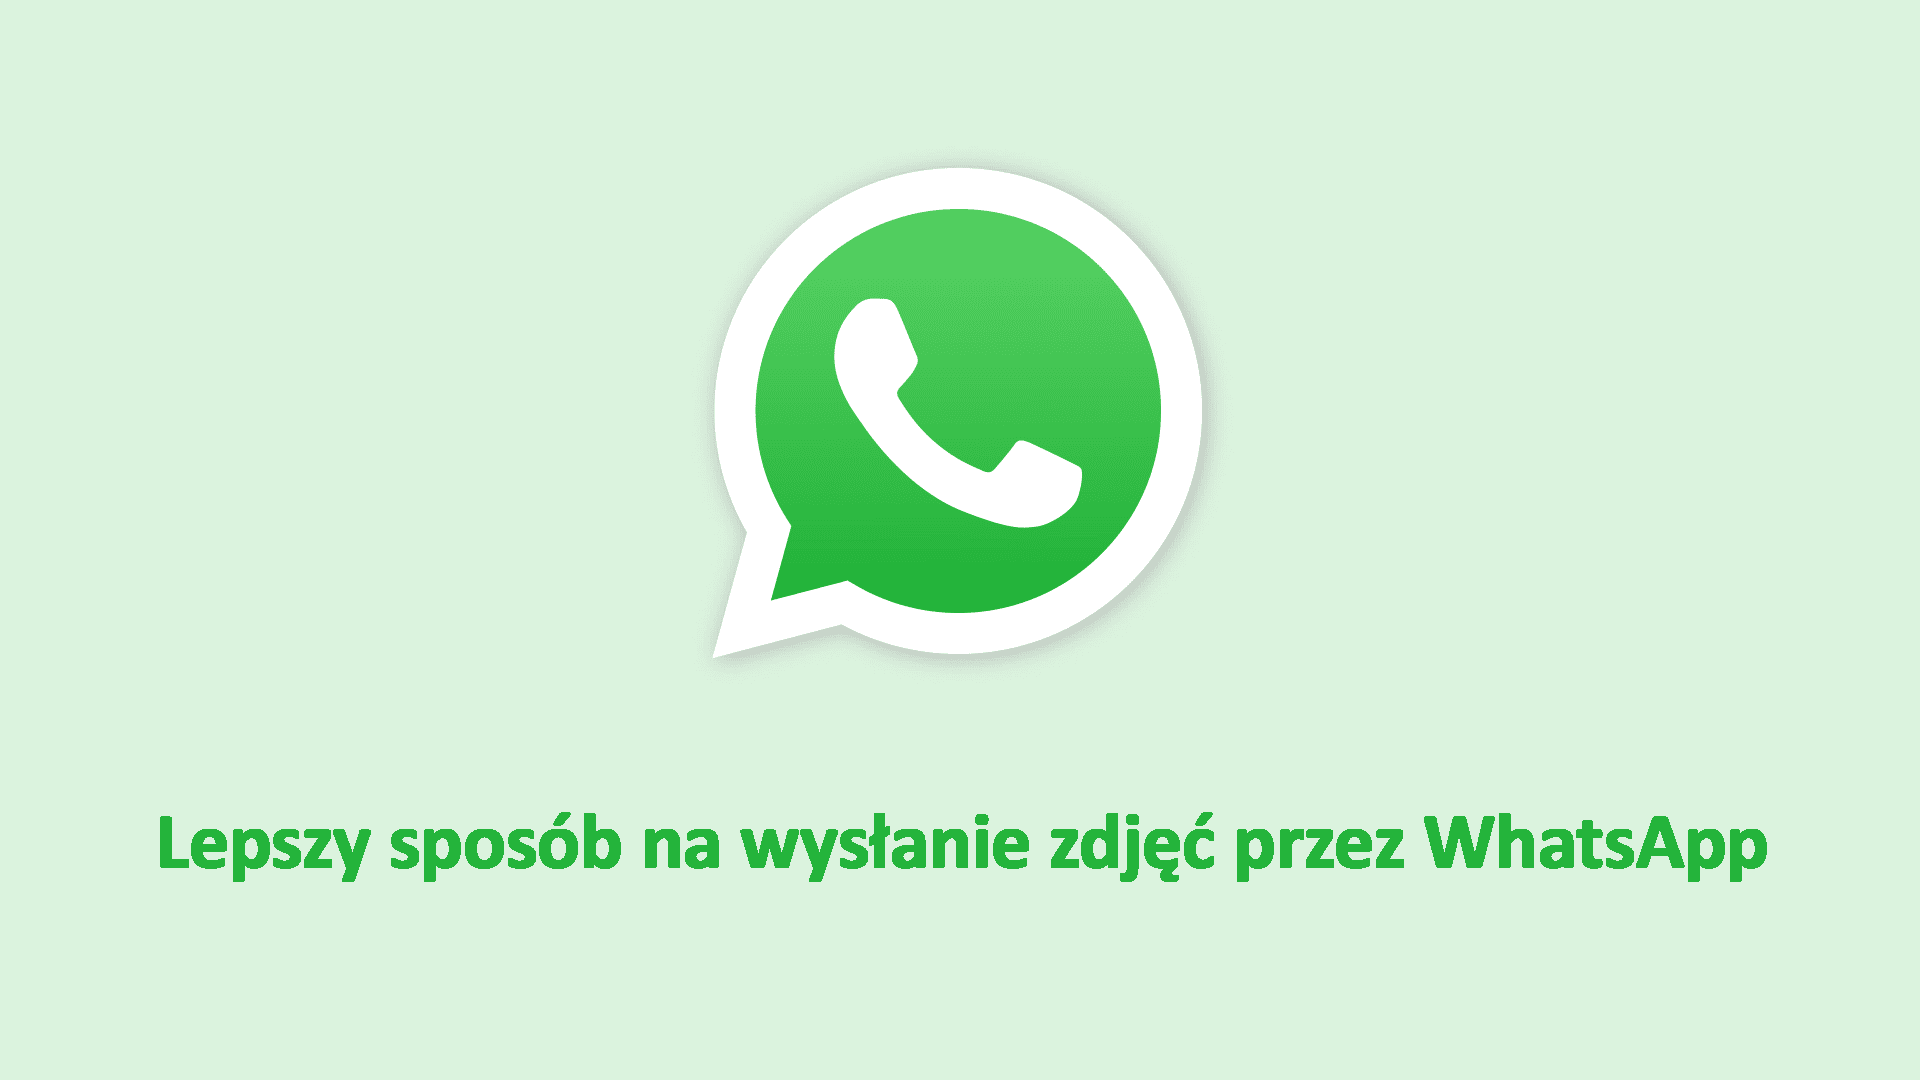 Lepszy sposób na wysłanie zdjęć przez WhatsApp